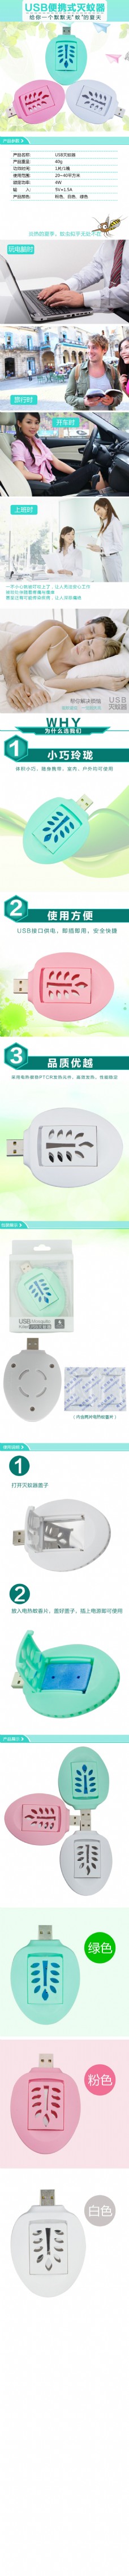 淘宝USB灭蚊器详情页